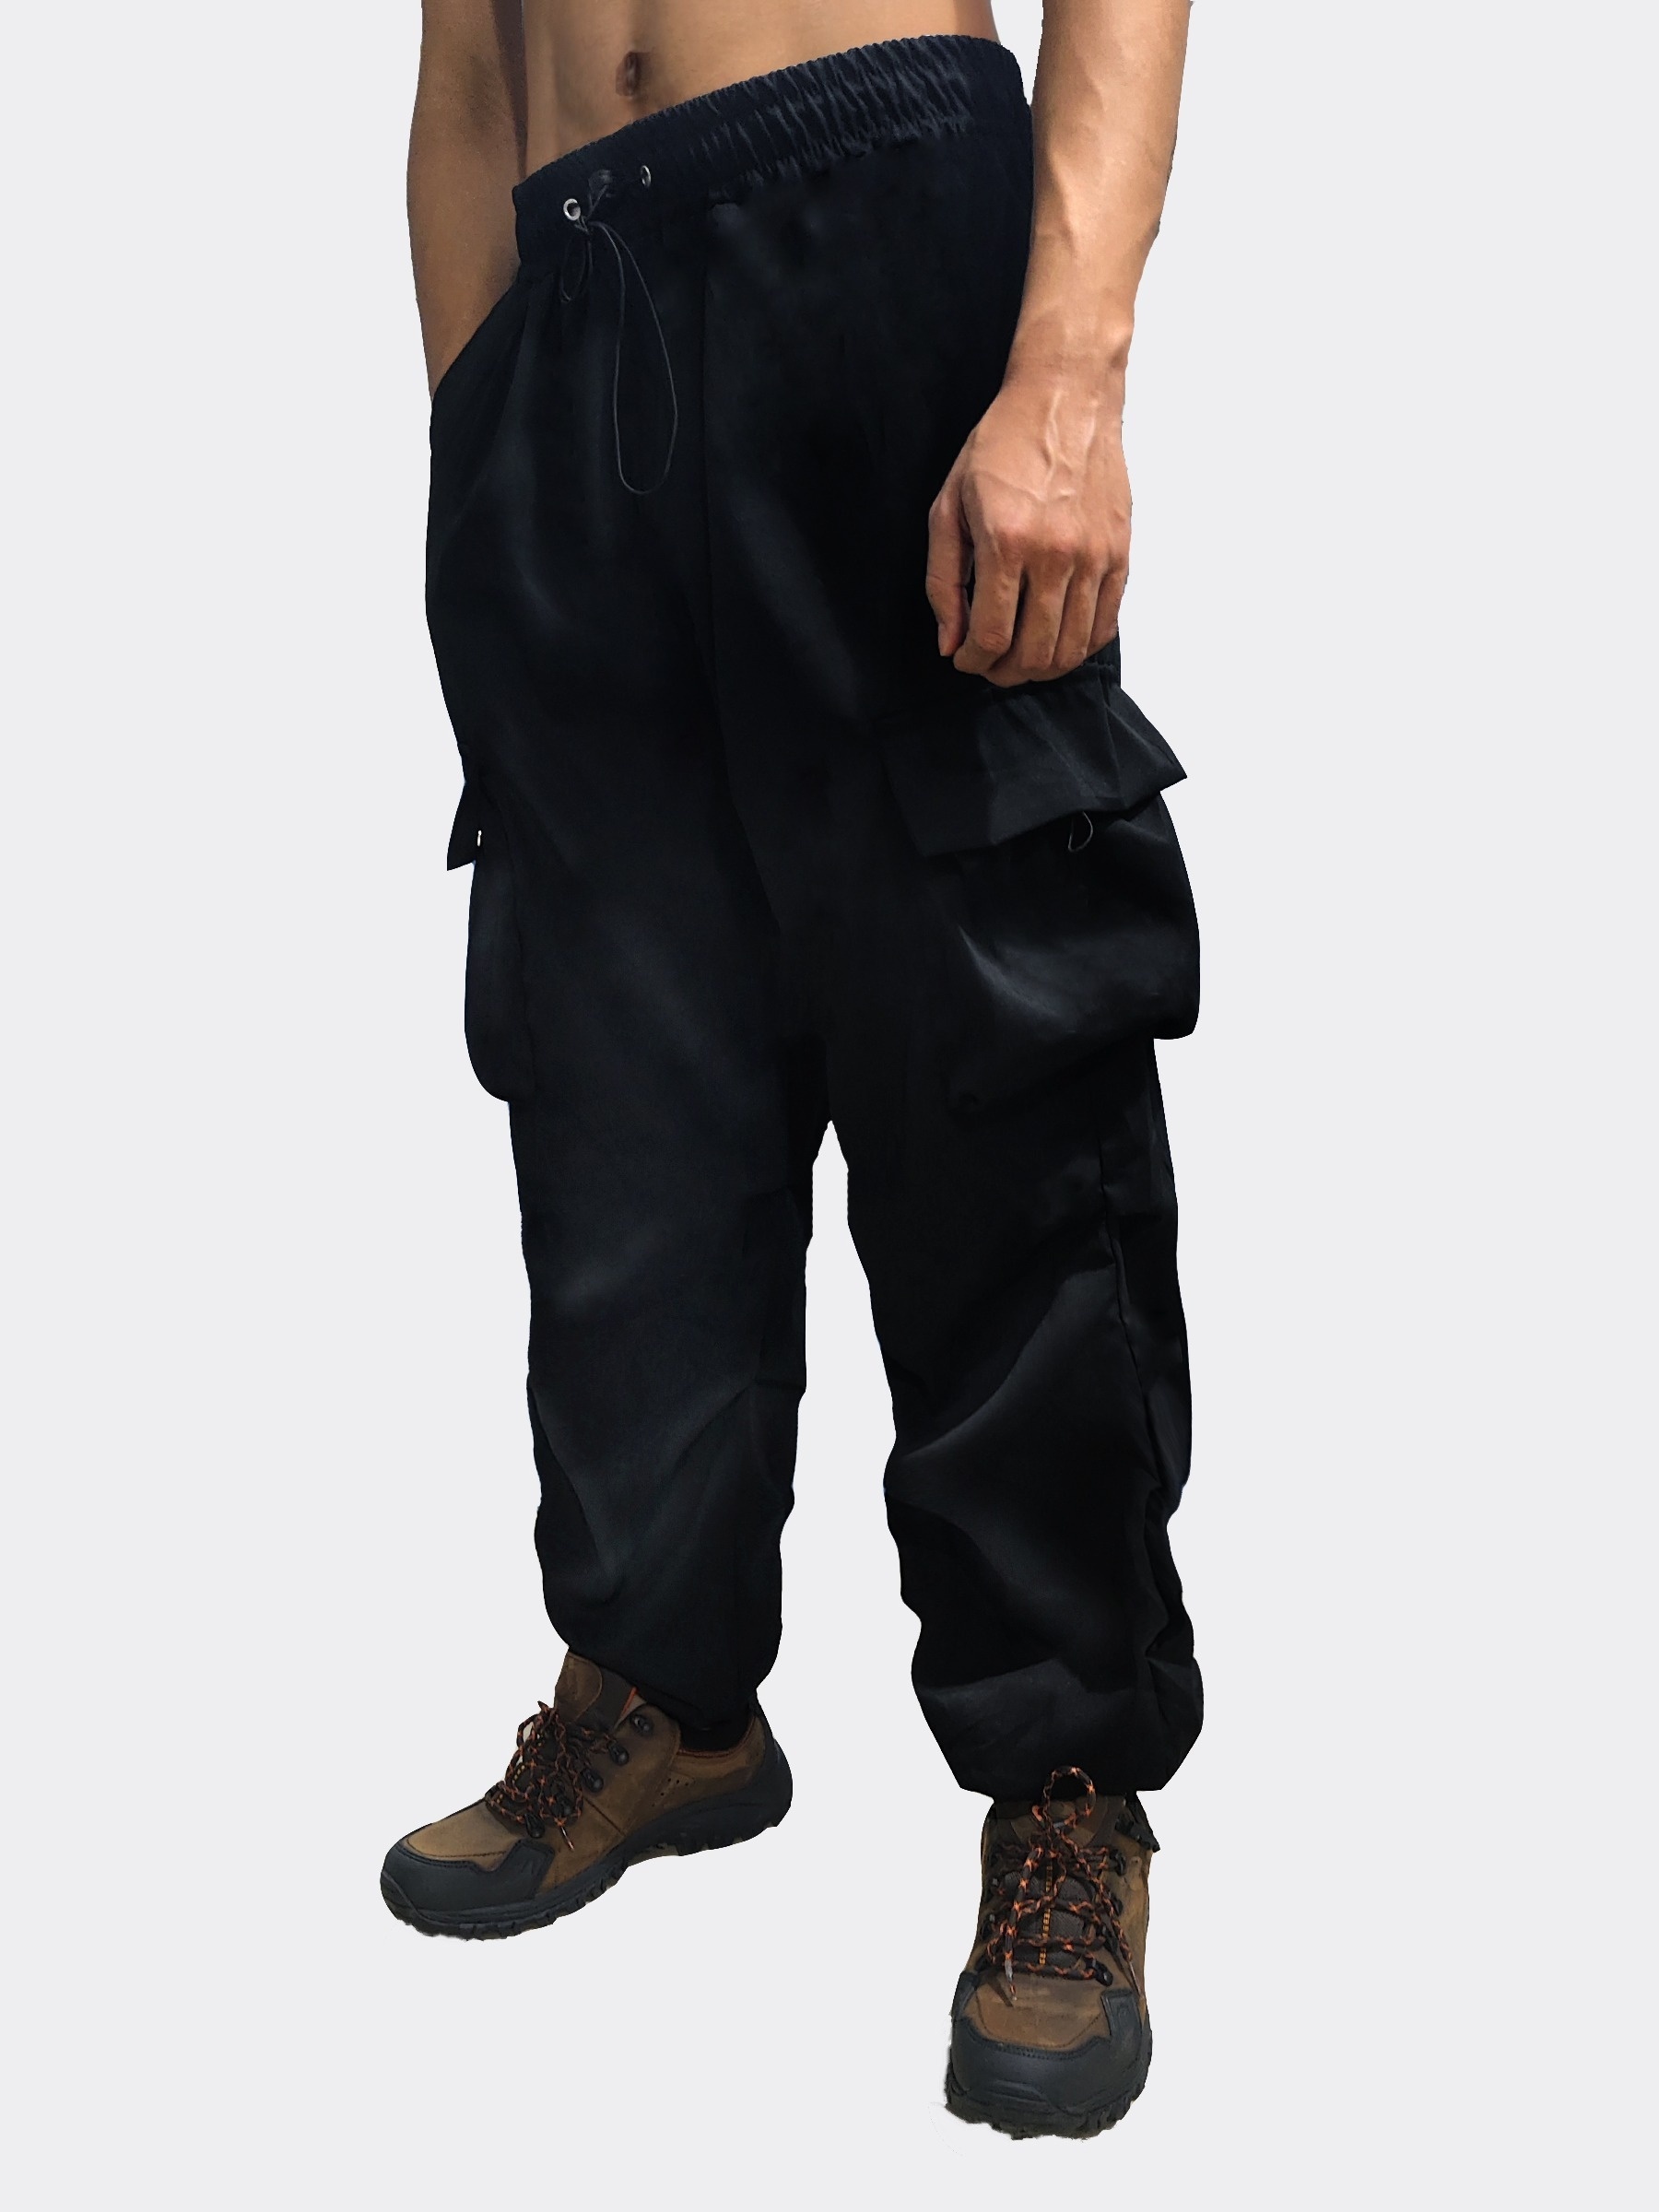 Plus Size Men's Flap Pocket Side Drawstring Waist Trousers, Solid  Fashionable Long Pants Harem Pants Design